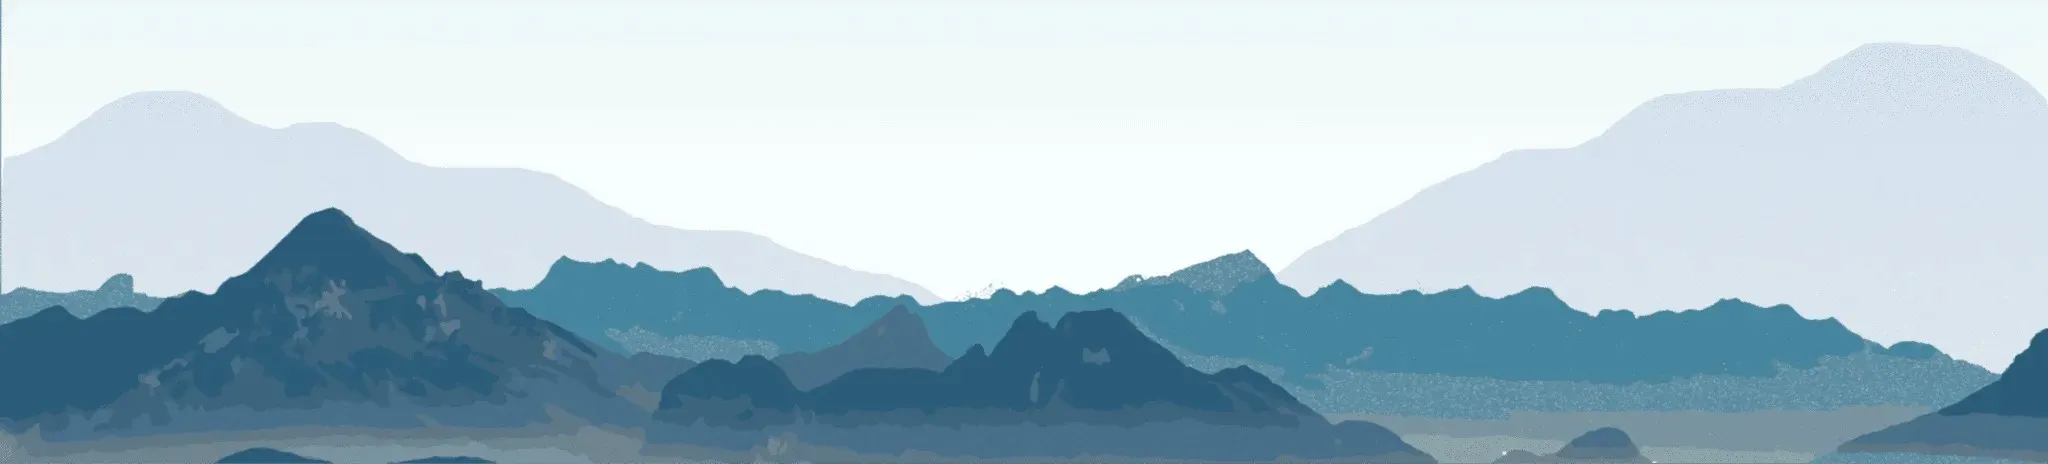 Blue tinted mountain range artwork.